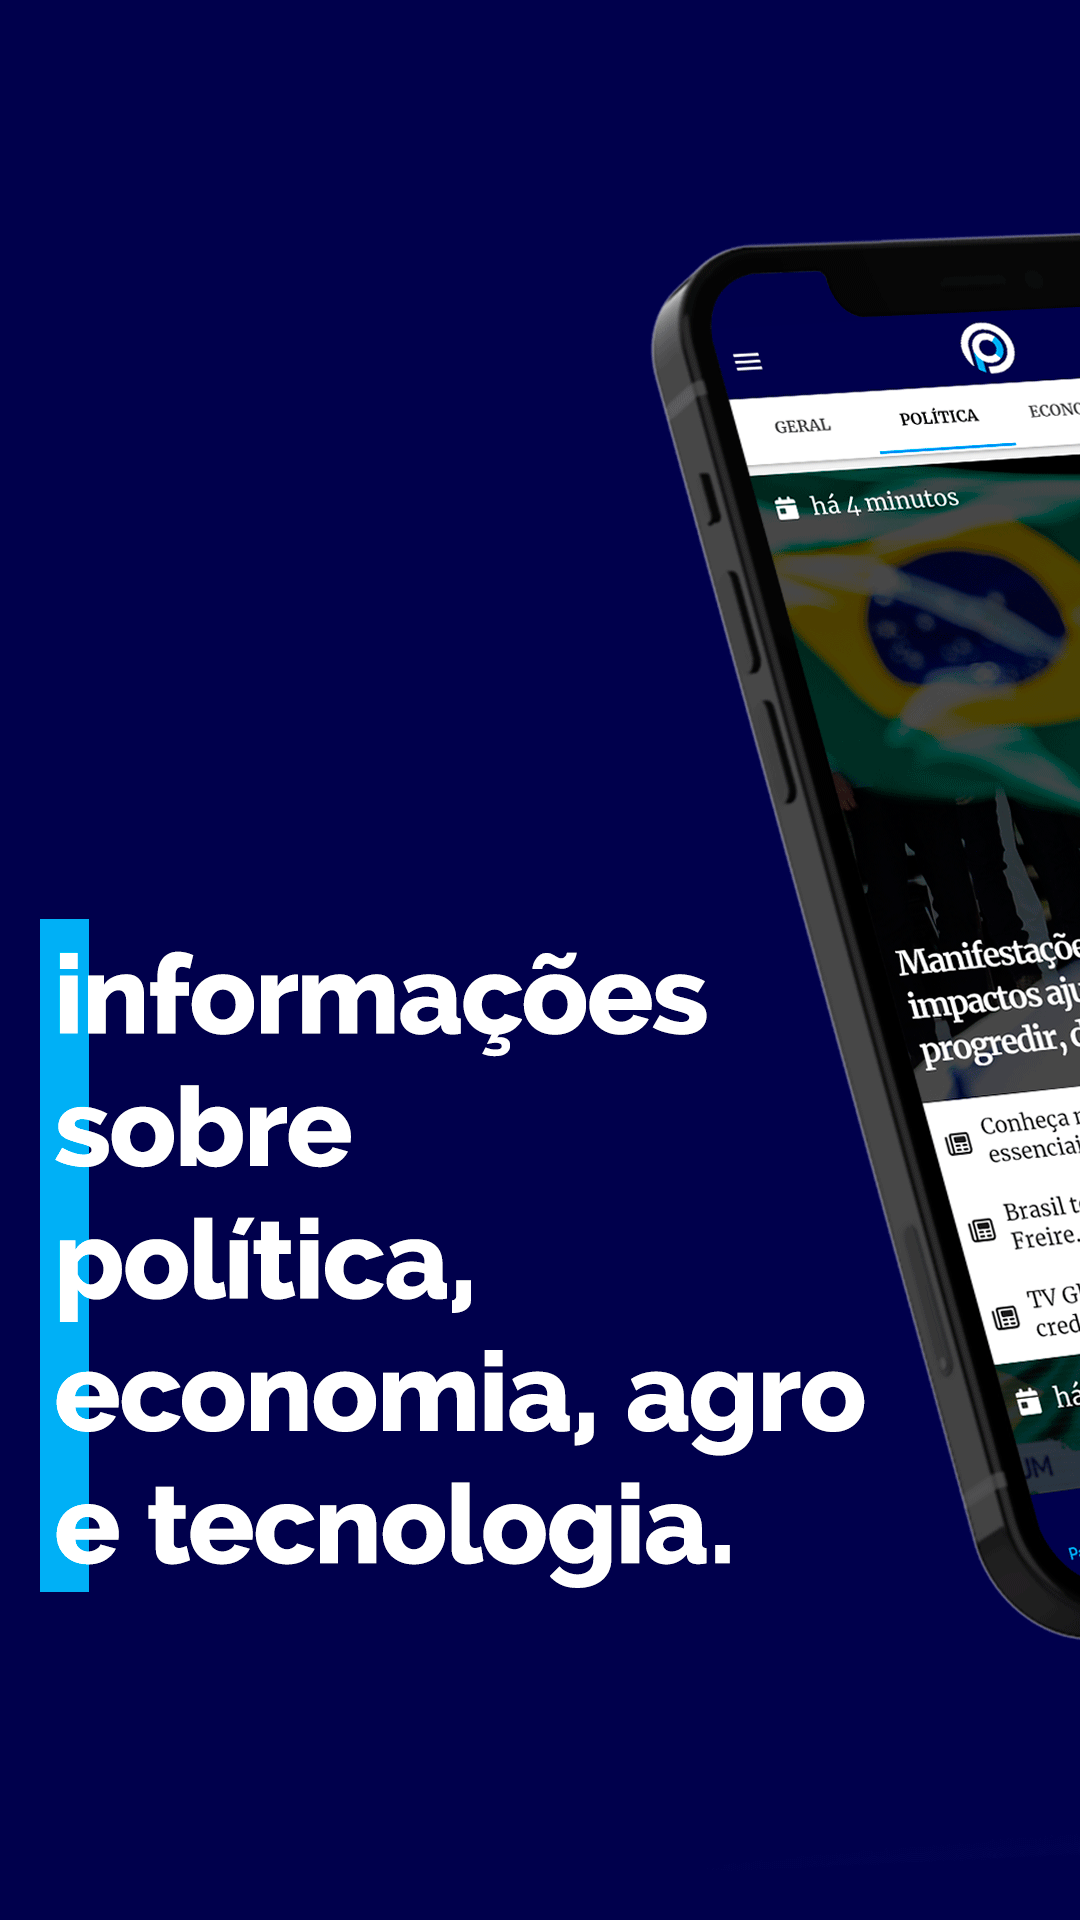 Tânia Rego | Agência Brasil